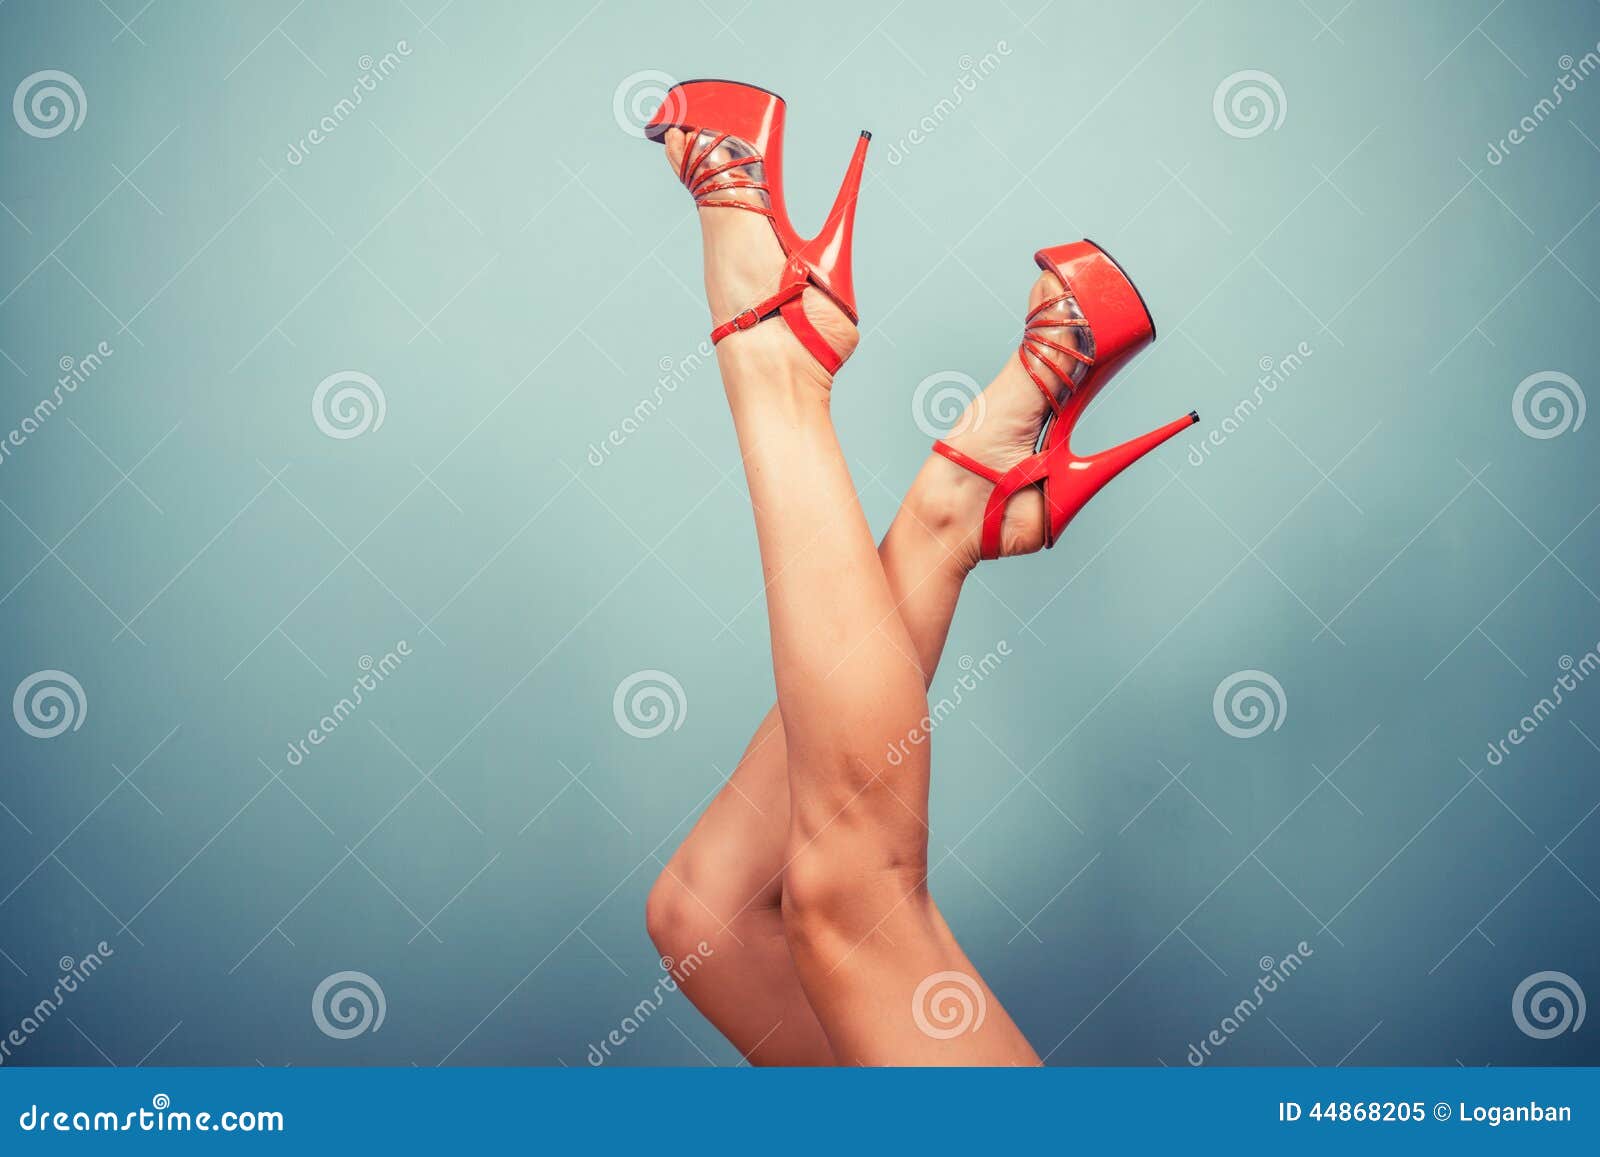 women in stripper heels